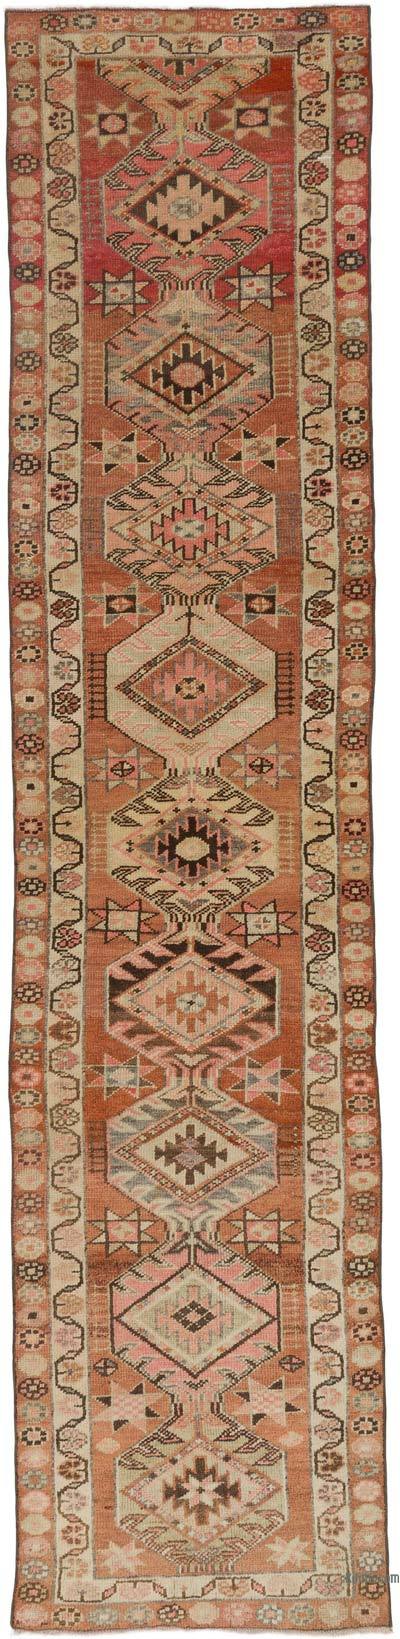 土耳其复古地毯- 2' 11